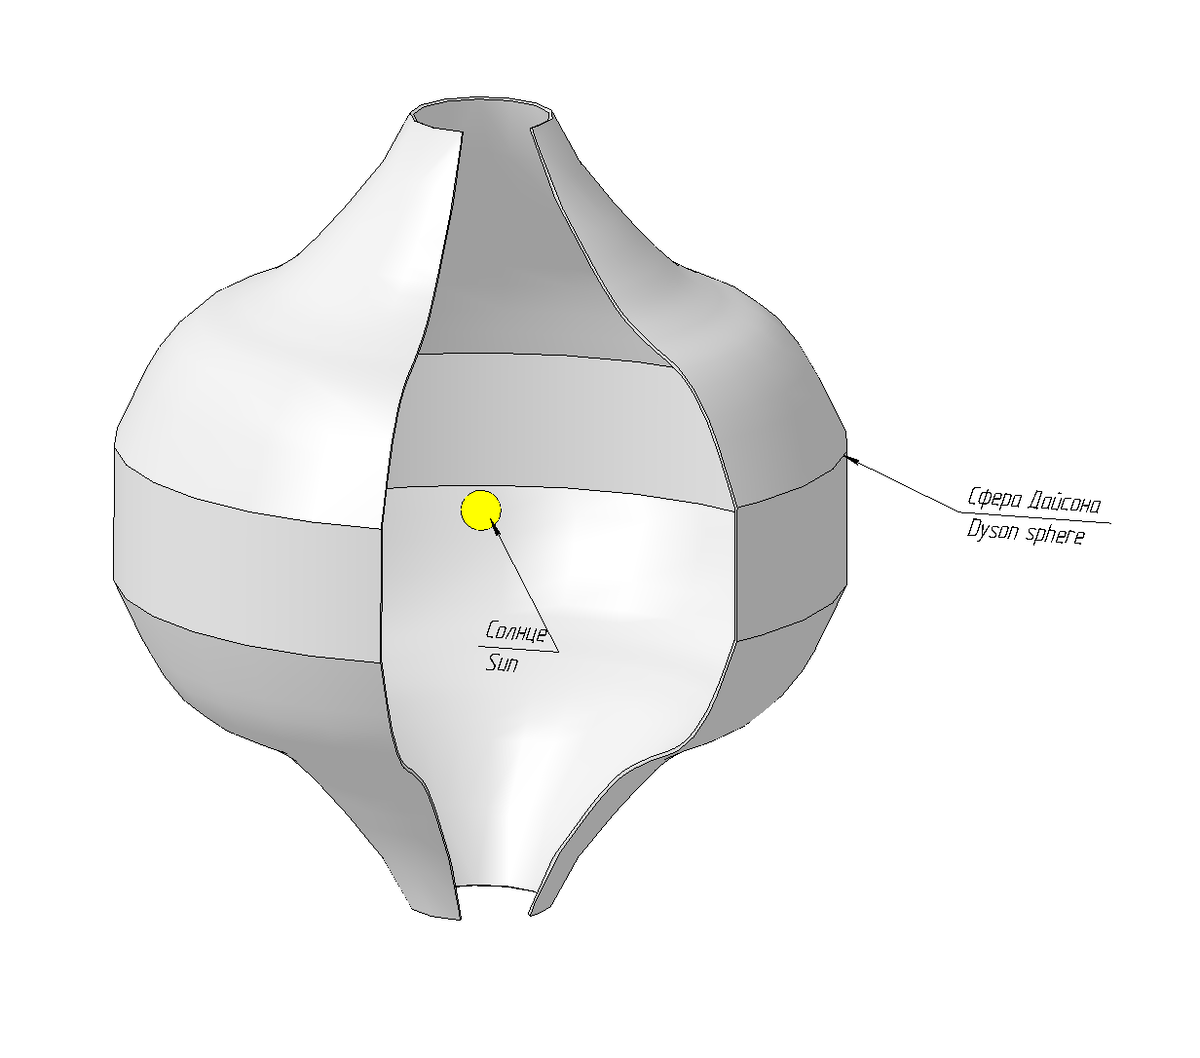 Вариант сферы, точнее поверхности дайсона вокруг звезды в котором проблема вращения решается путем удаления медленно вращающихся частей от звезды. Источник: wikipedia.org.